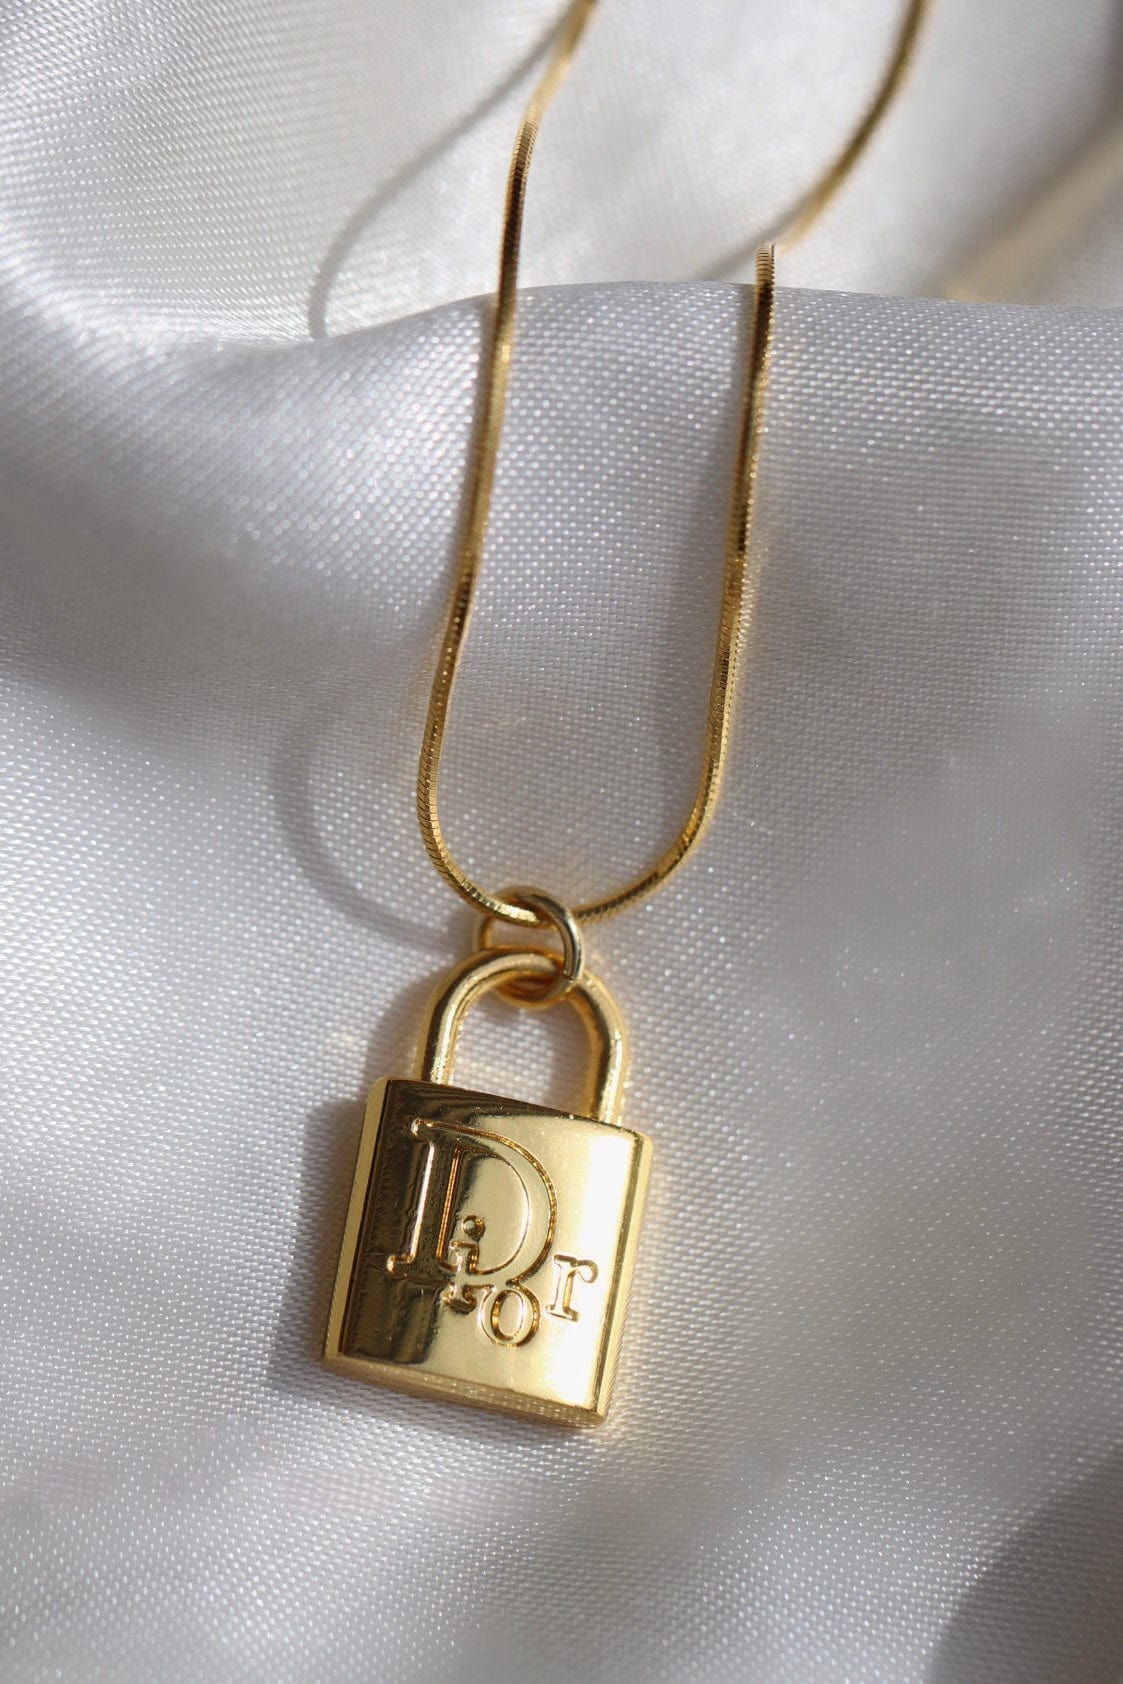 Dior lock necklace  eBay